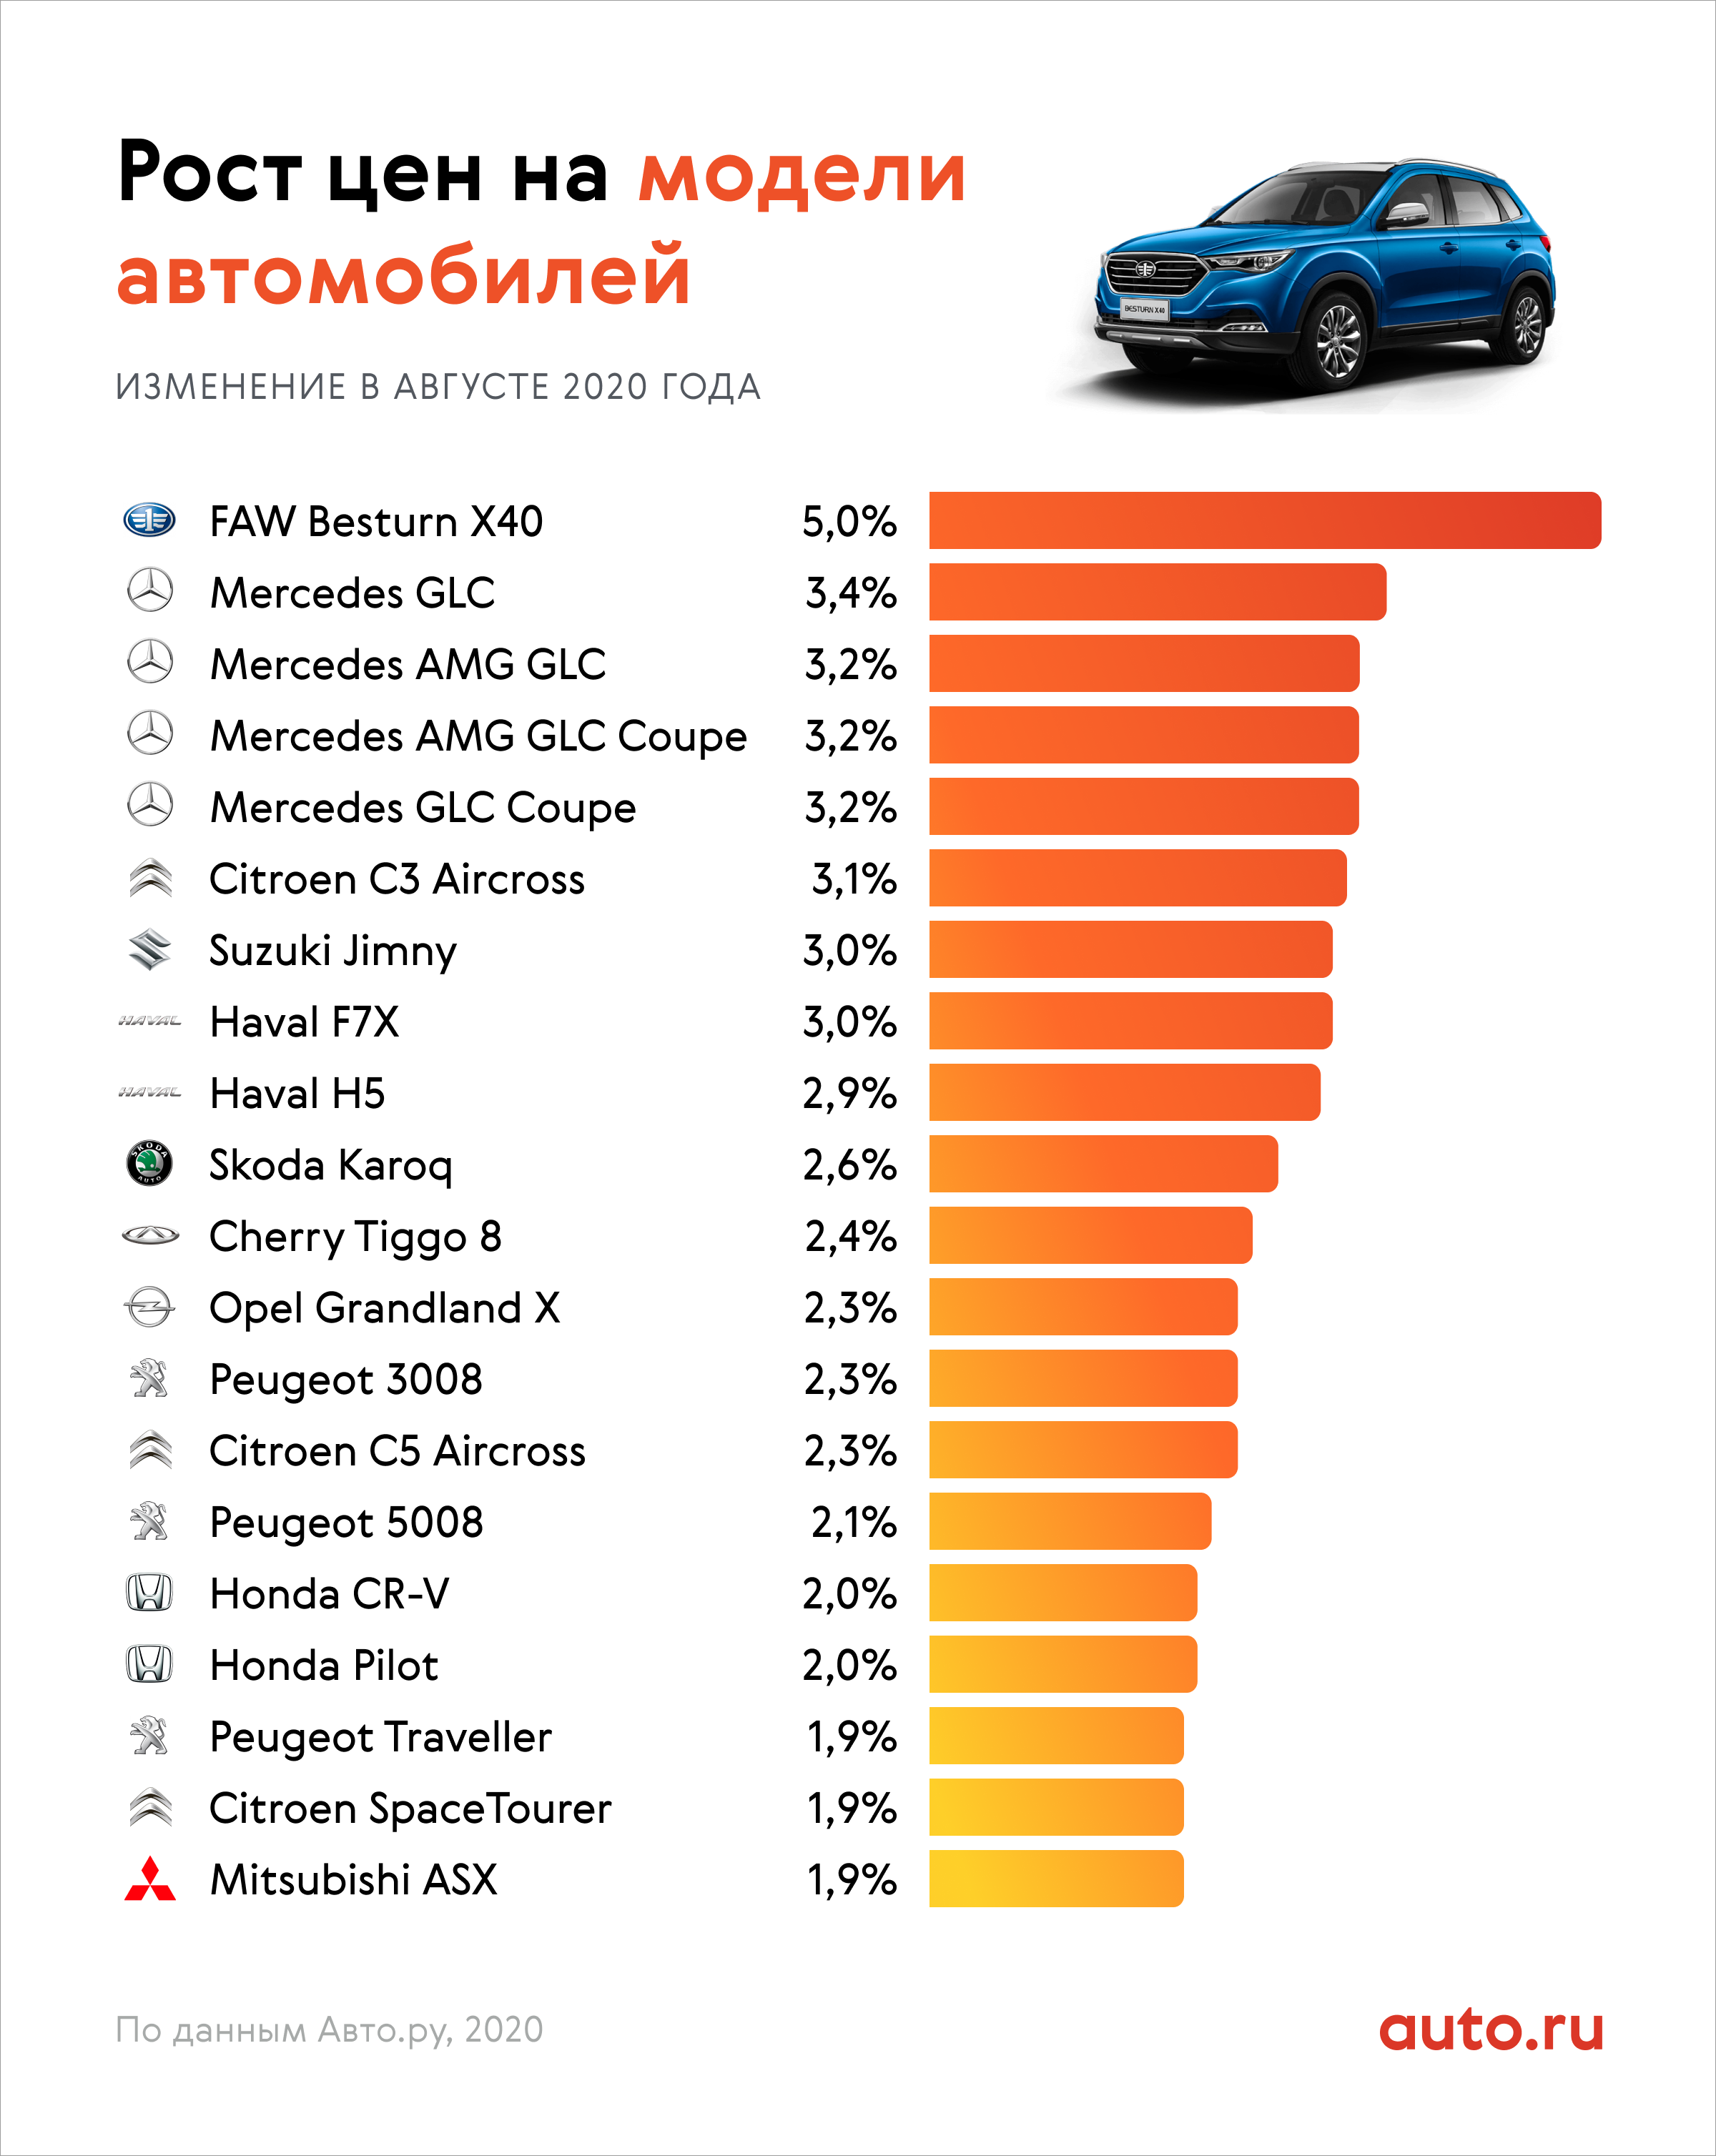 цены на машины в 2015 году в россии